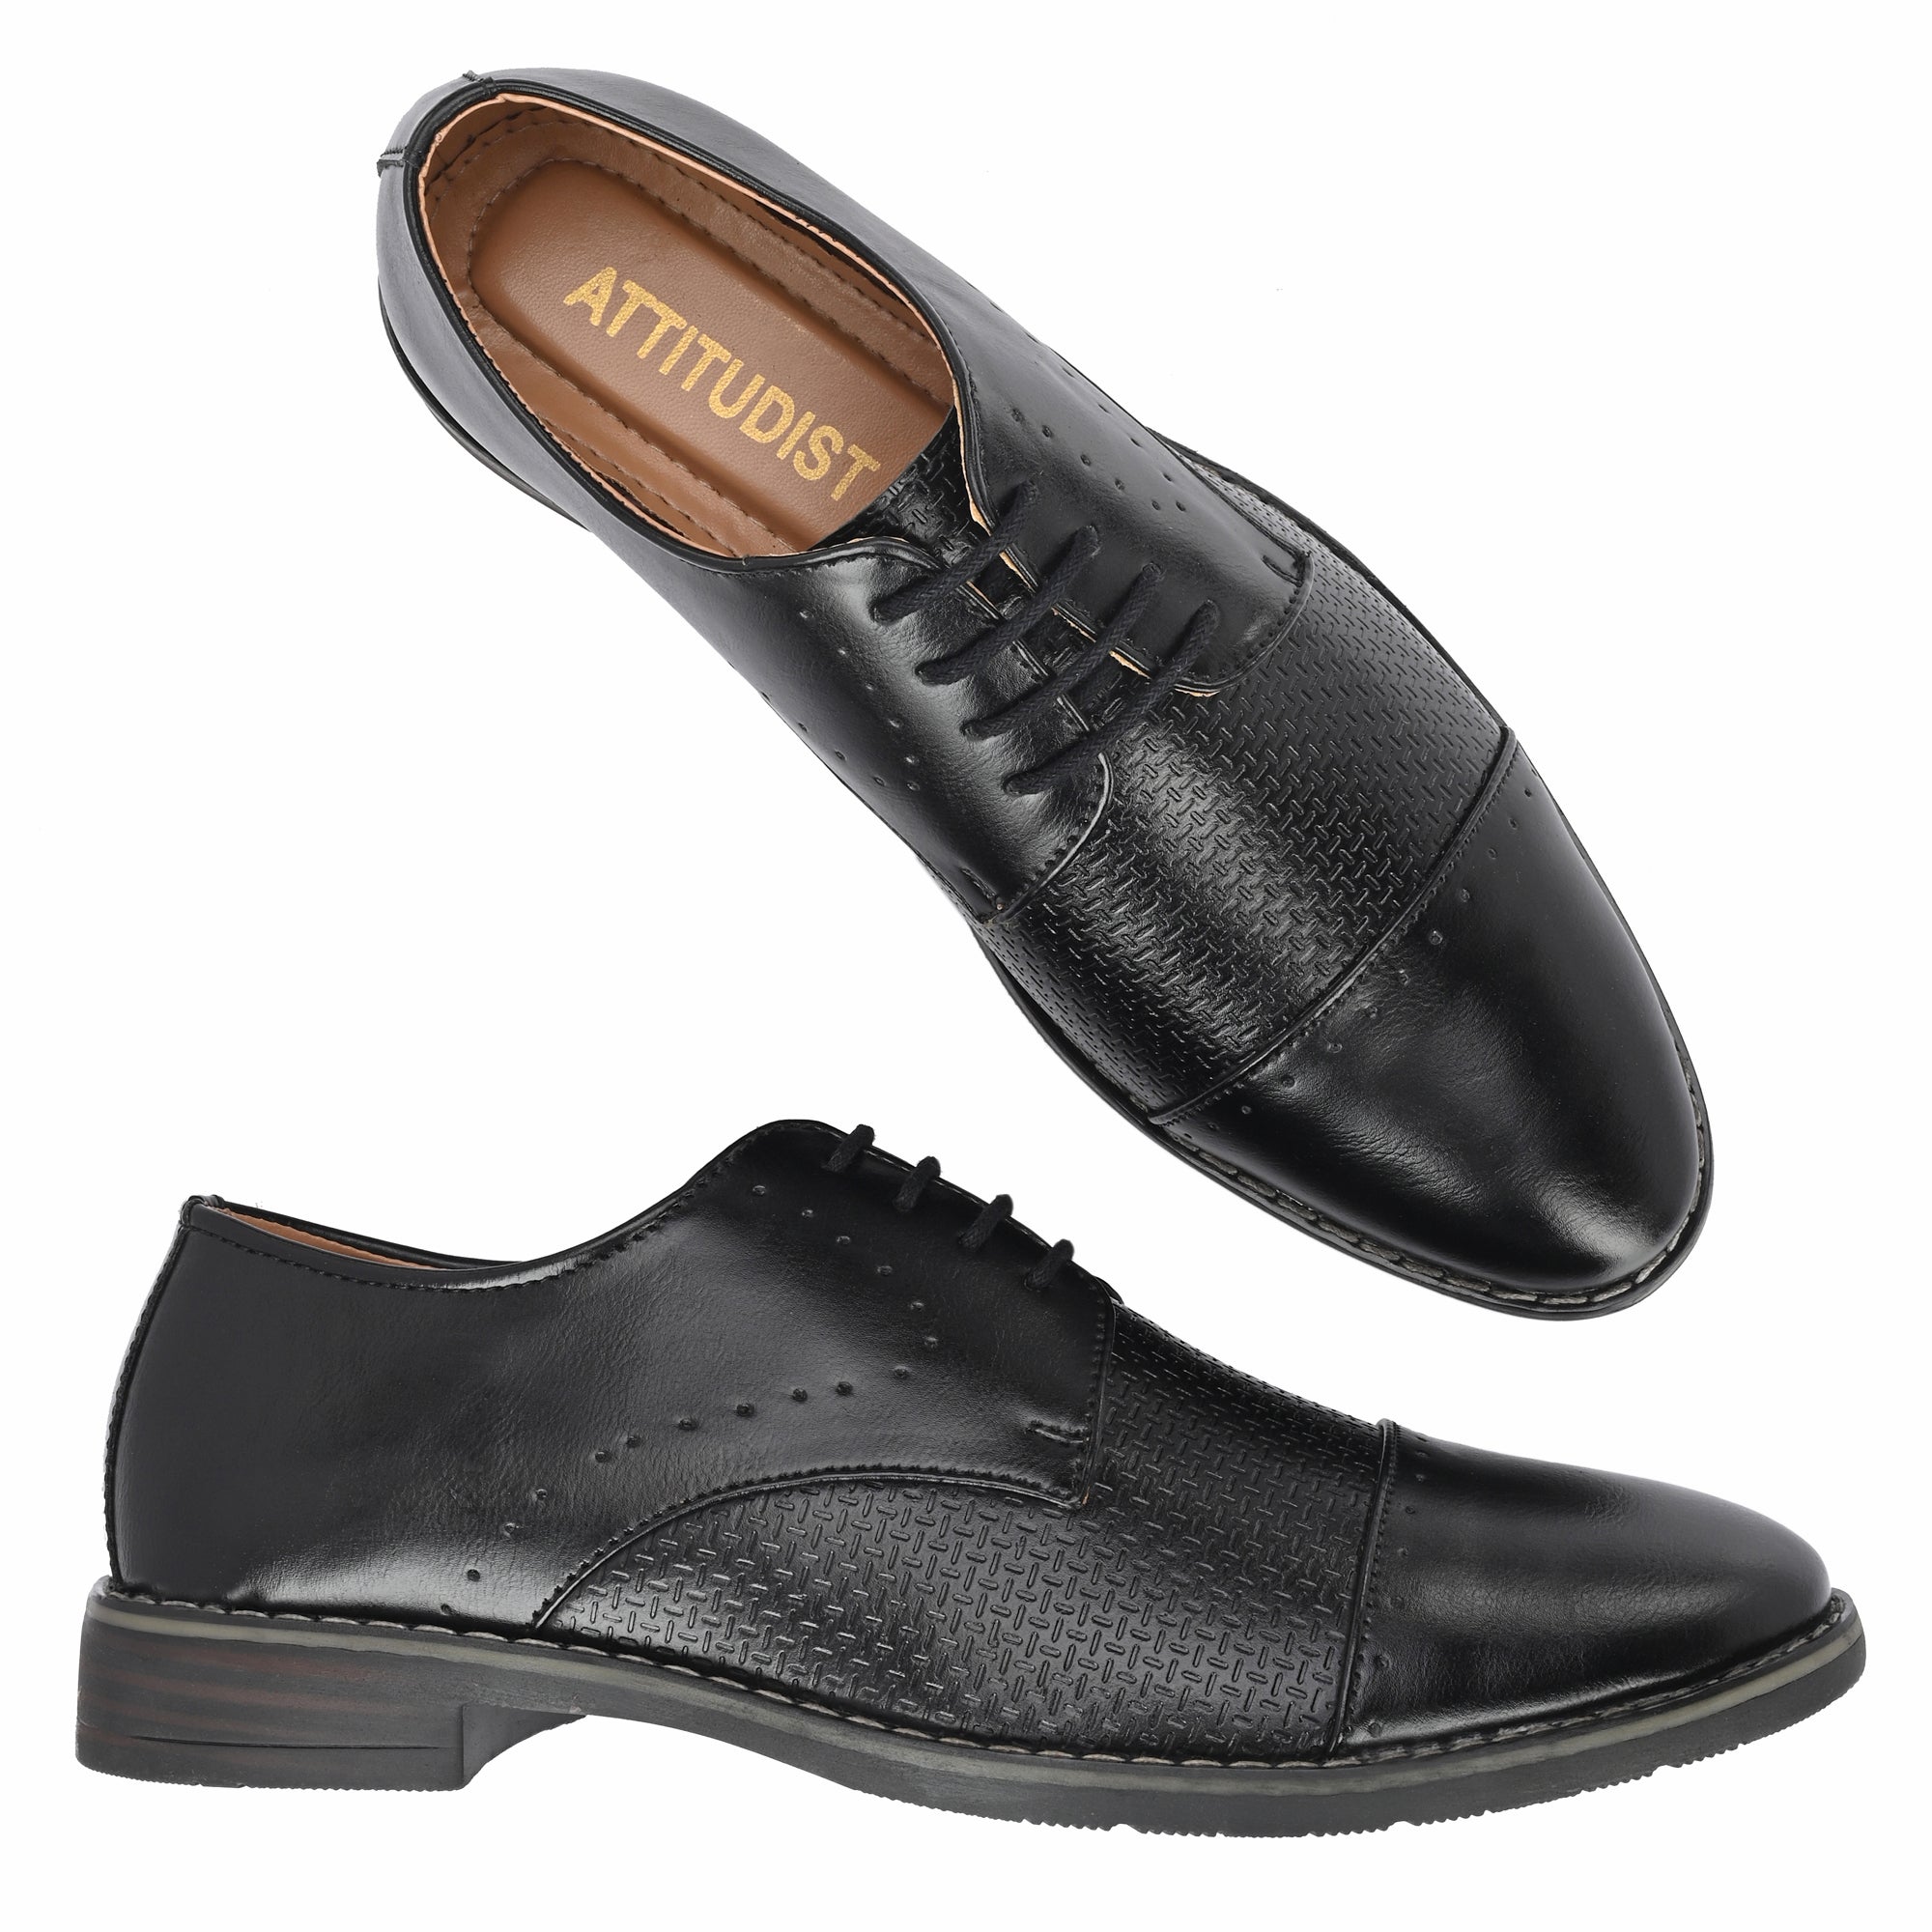 formal-lace-up-attitudist-shoes-for-men-3720black